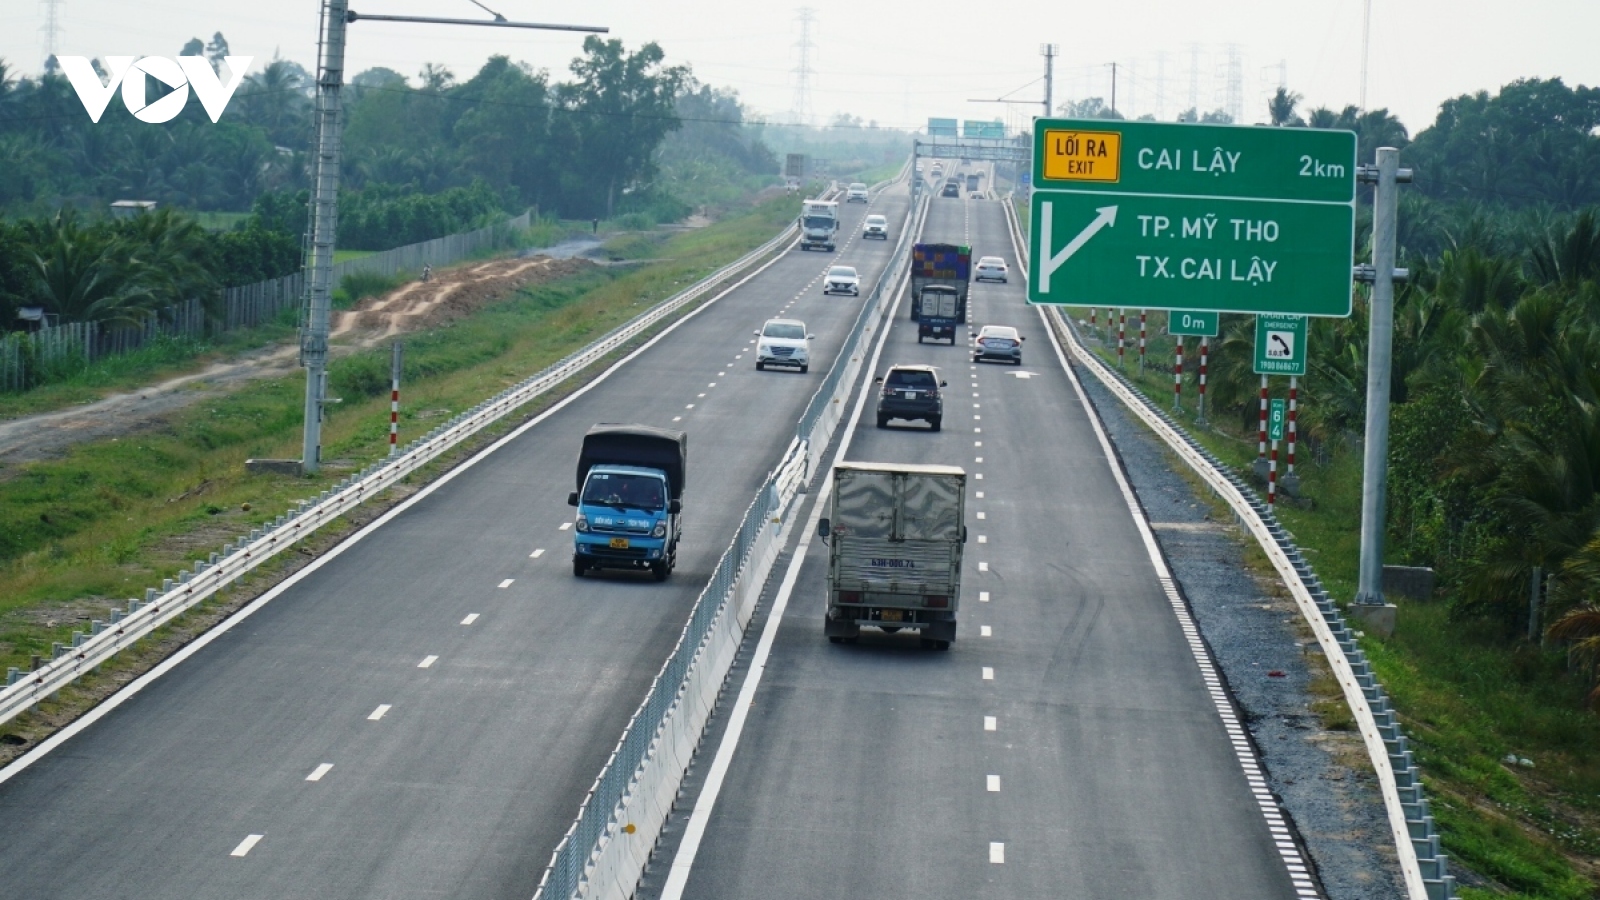 Đồng ý chủ trương mở rộng tuyến cao tốc TP.HCM-Trung Lương-Mỹ Thuận